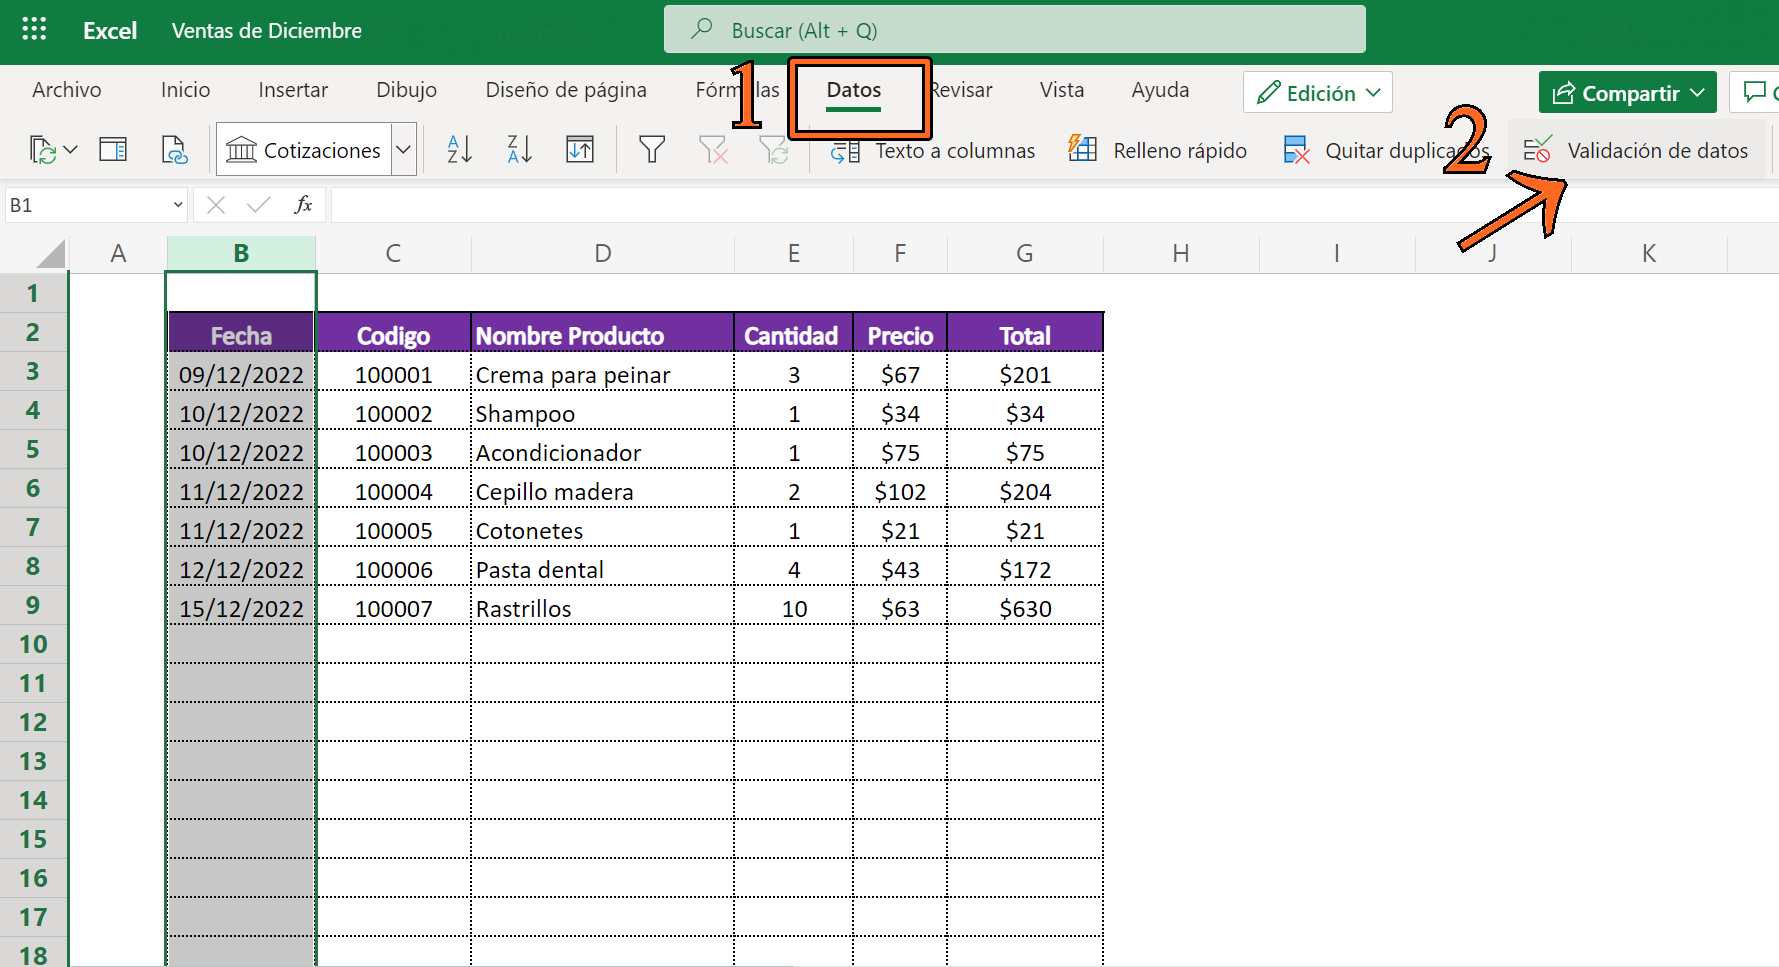 Validación de datos en Excel: Cómo crear una lista con dos columnas